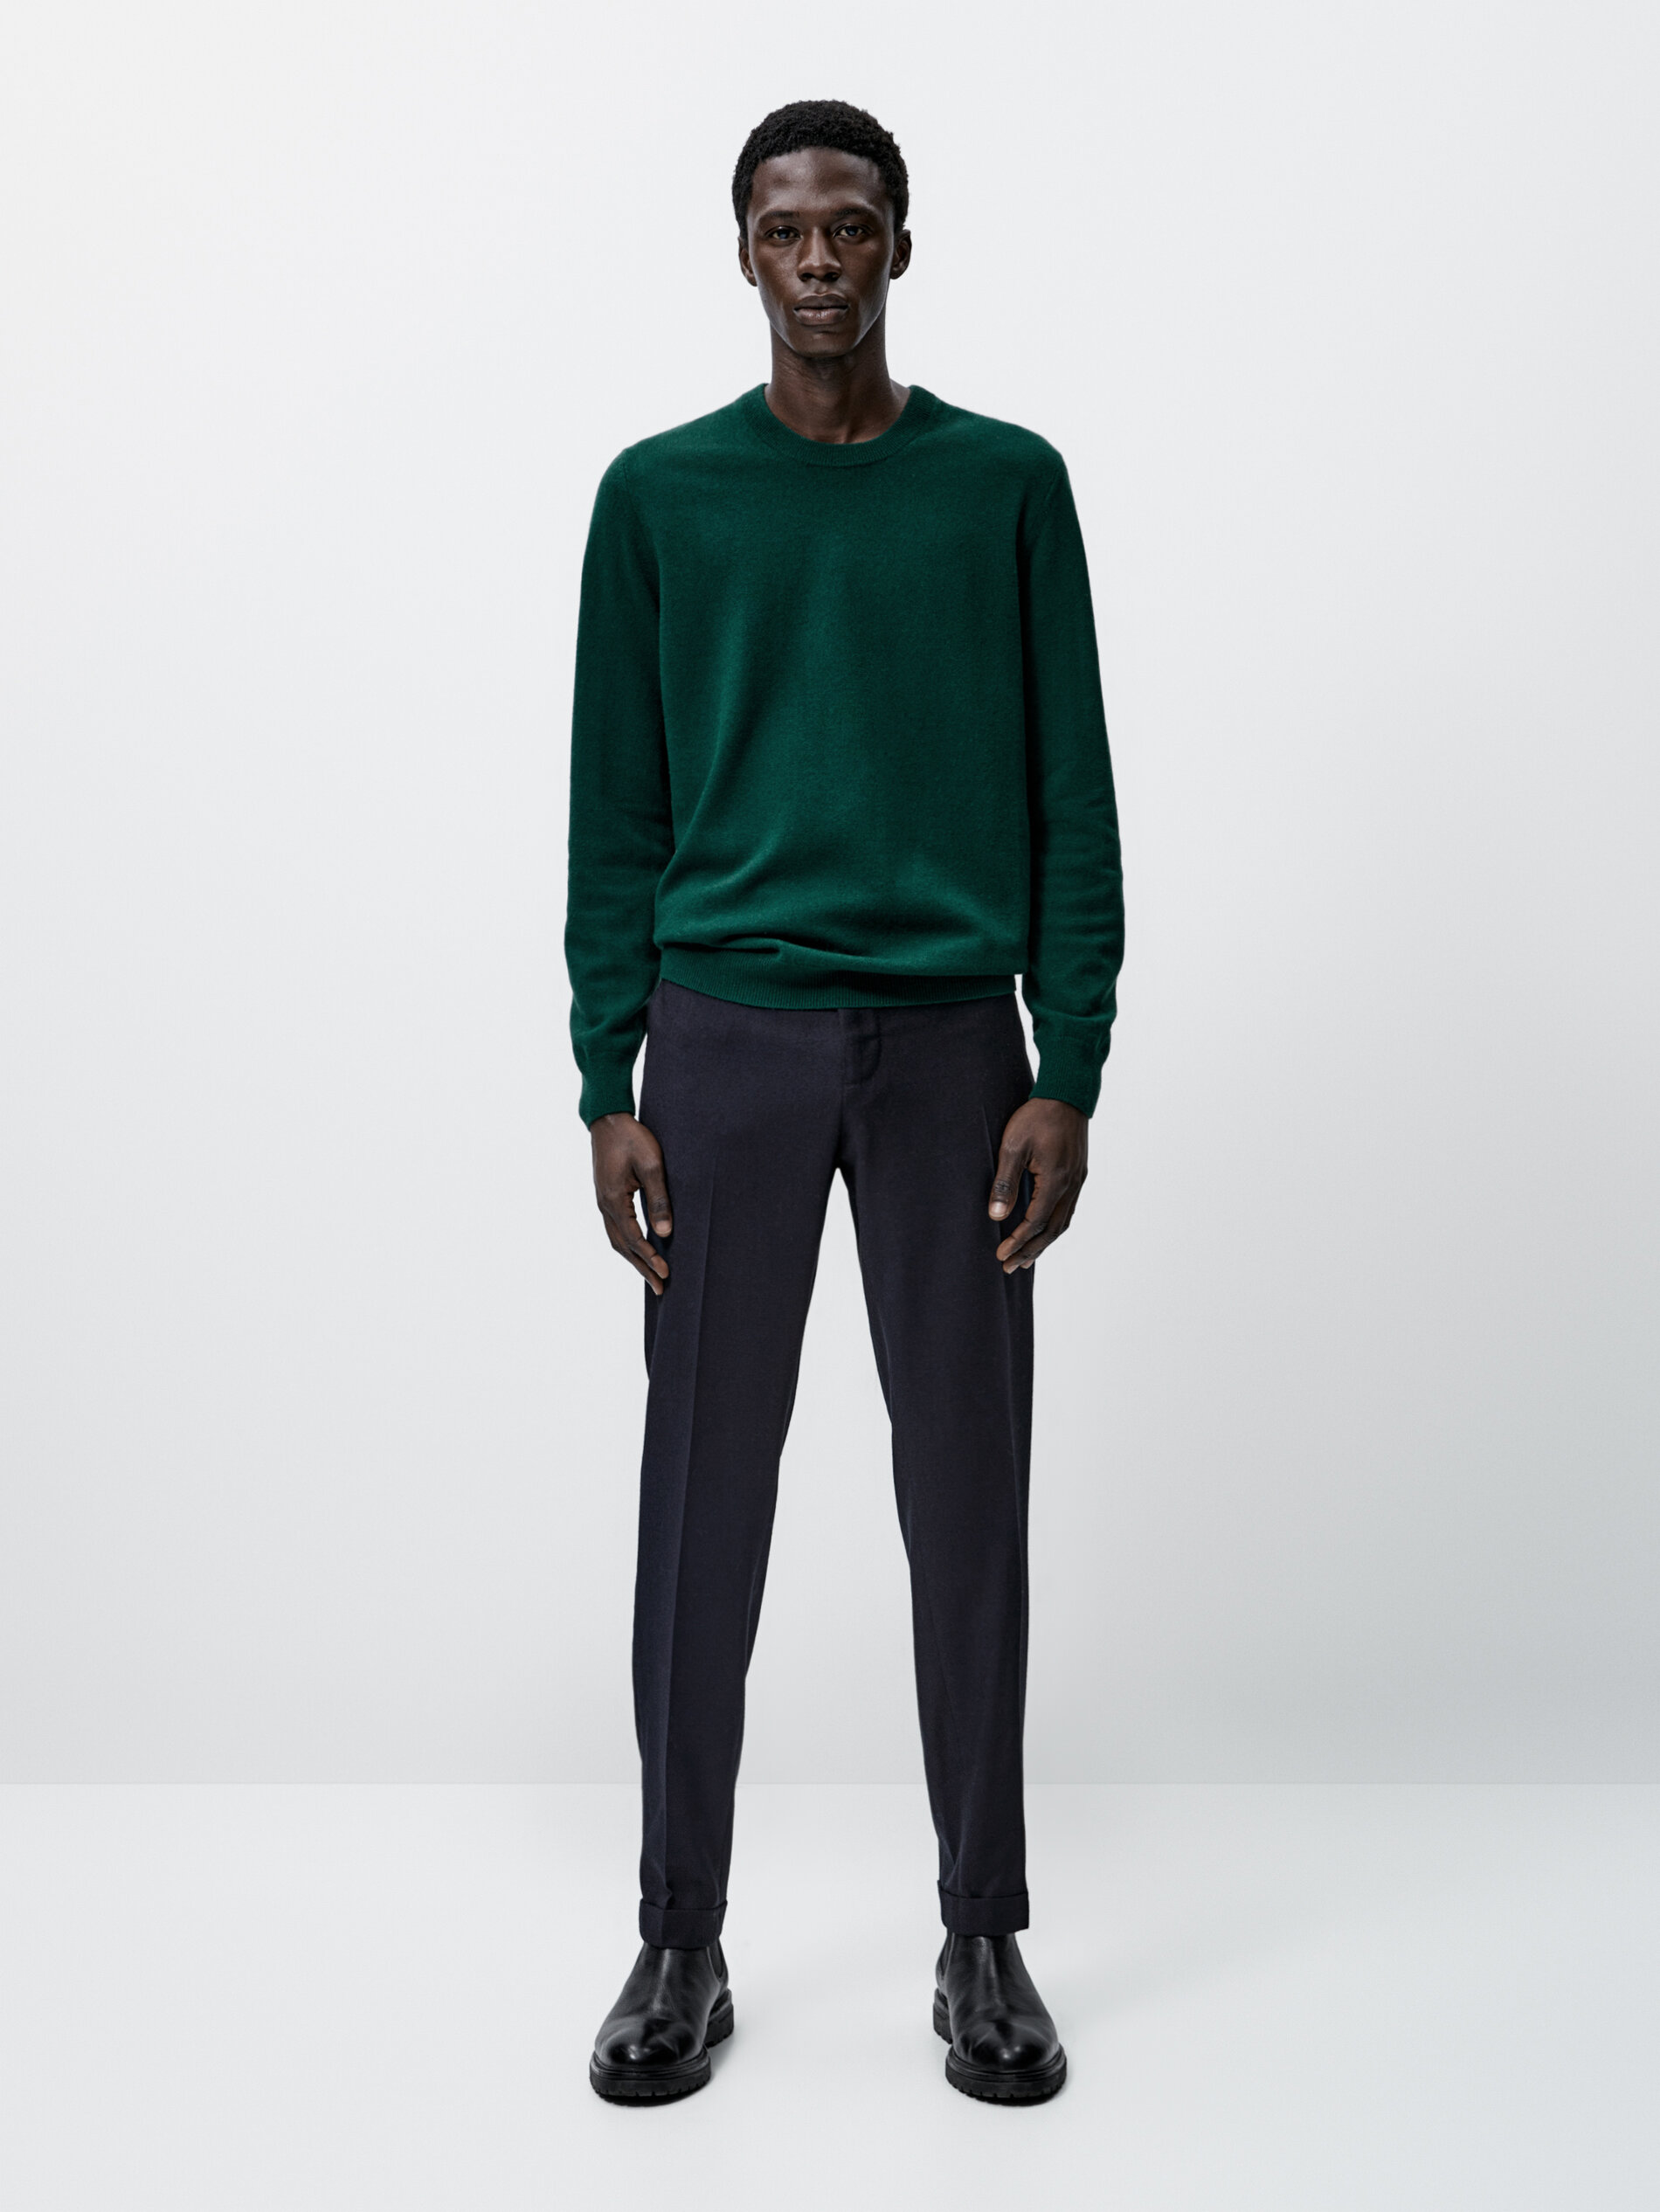 Green L MEN FASHION Jumpers & Sweatshirts Elegant Massimo Dutti jumper discount 94% 